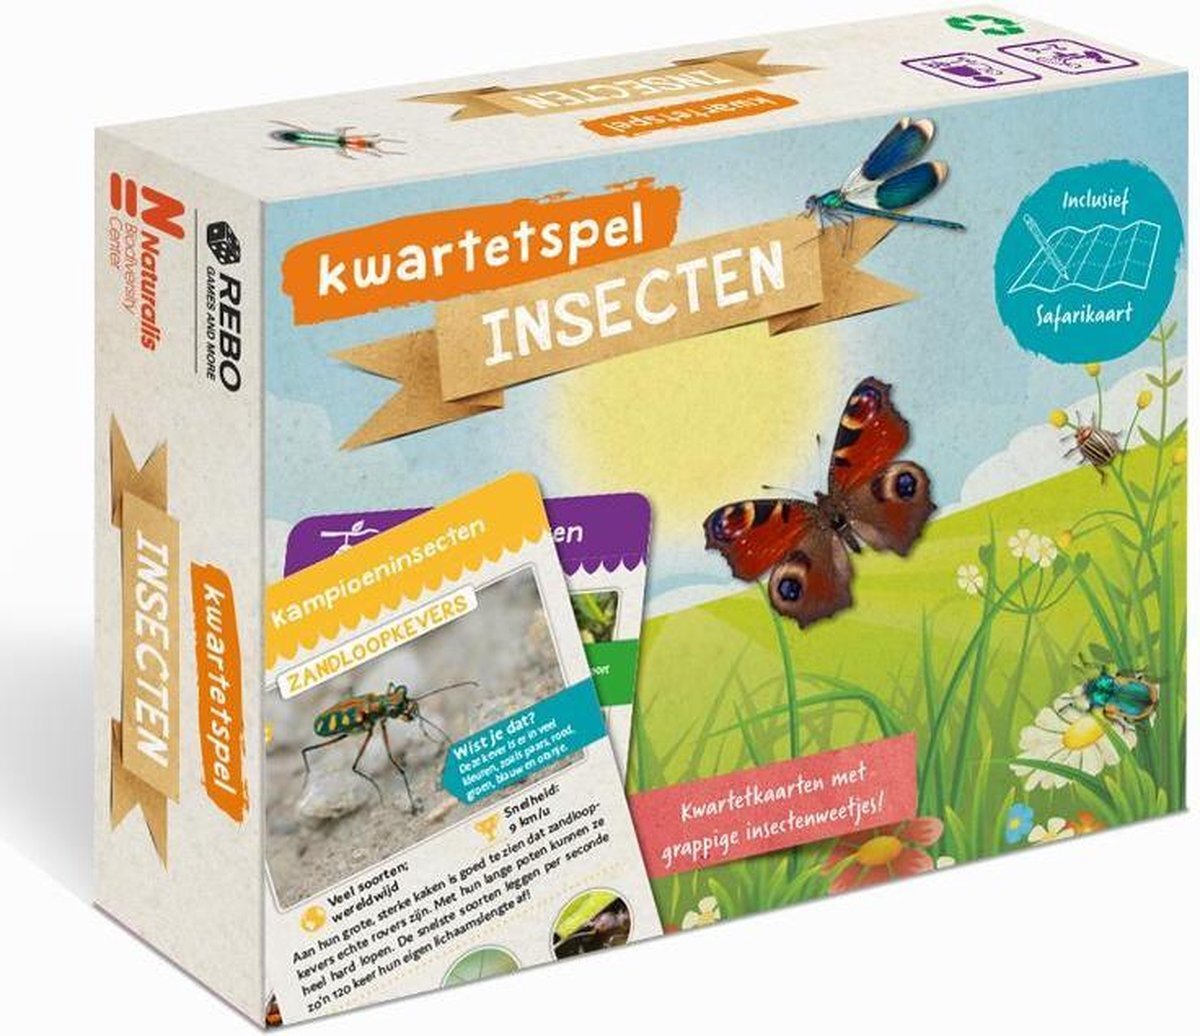 Massamarkt Kinderboeken Icob Insecten - Insectenboek en kwartetspel insecten